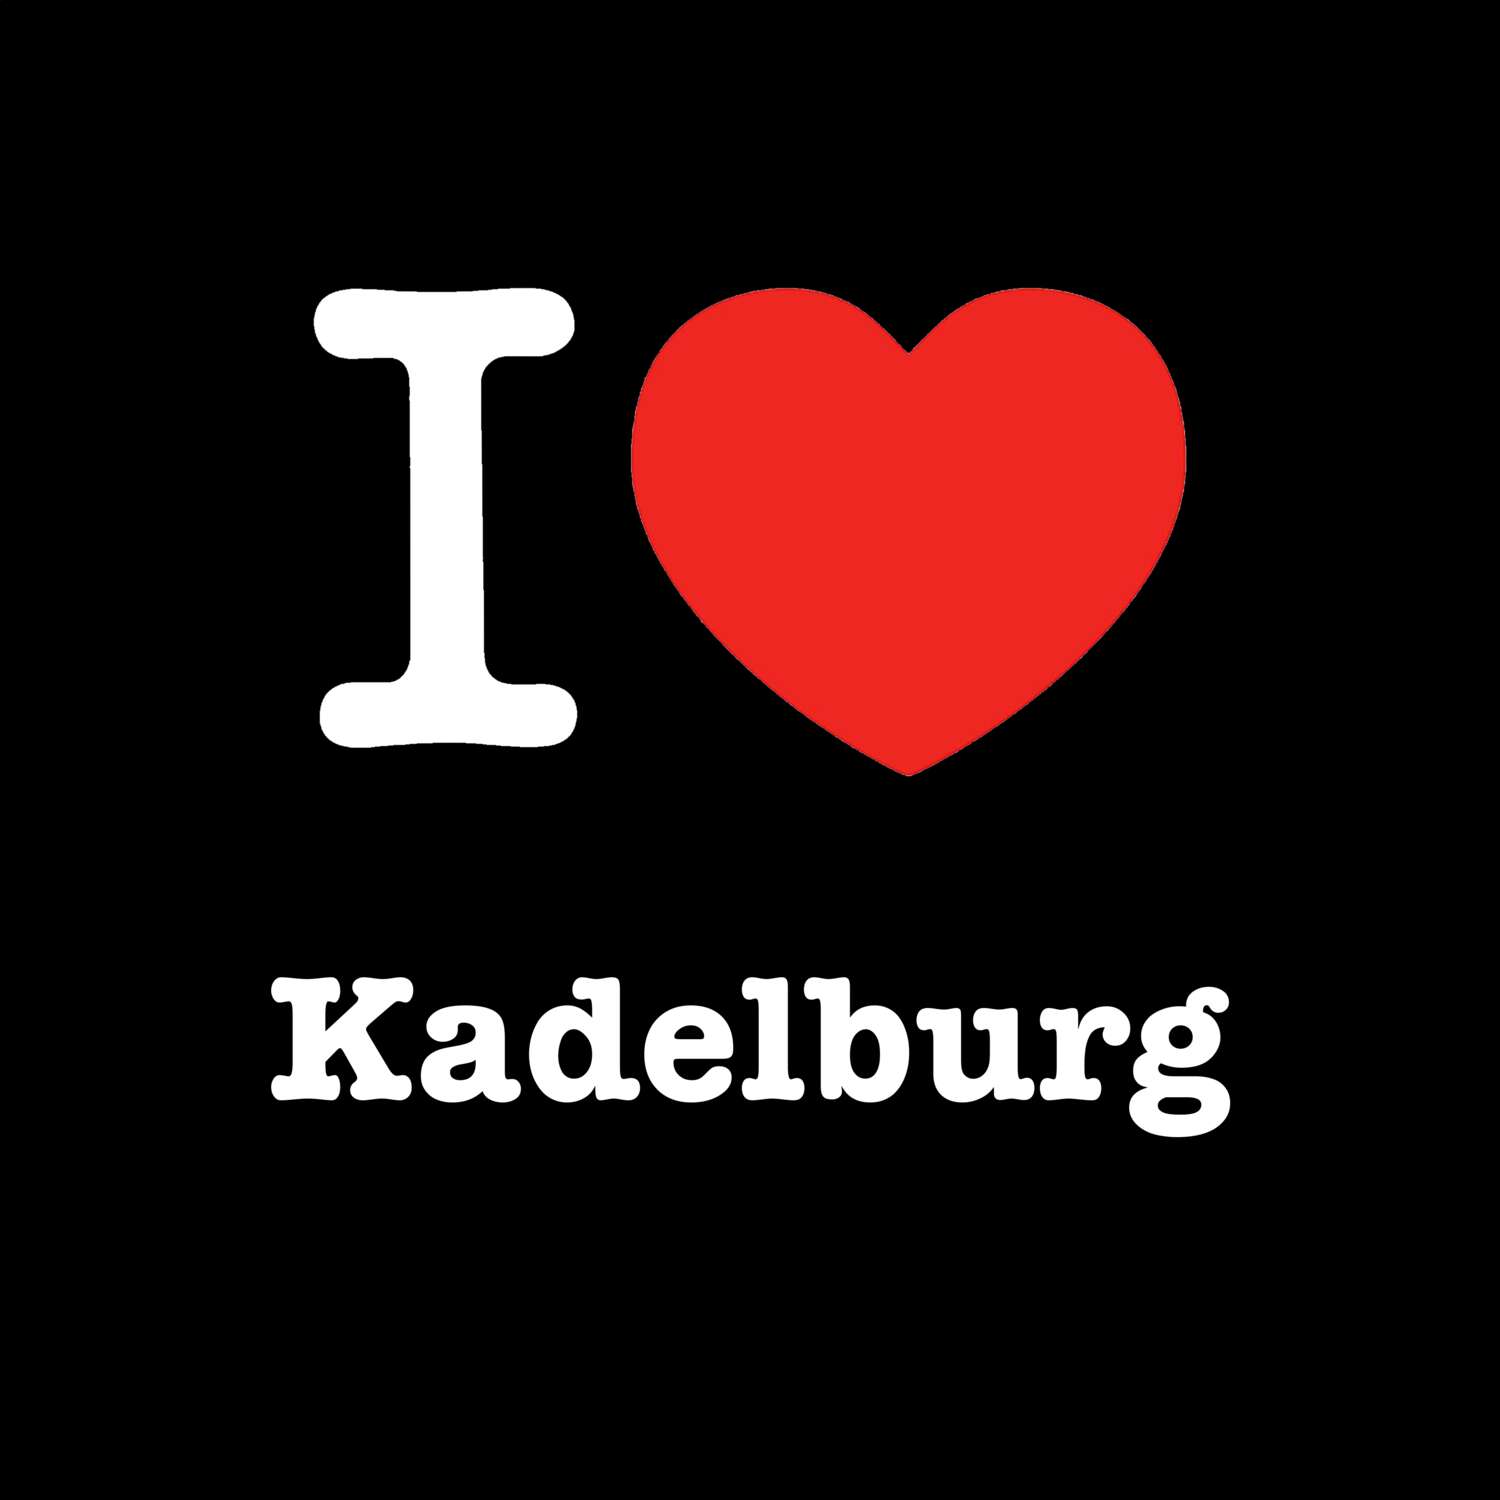 Kadelburg T-Shirt »I love«